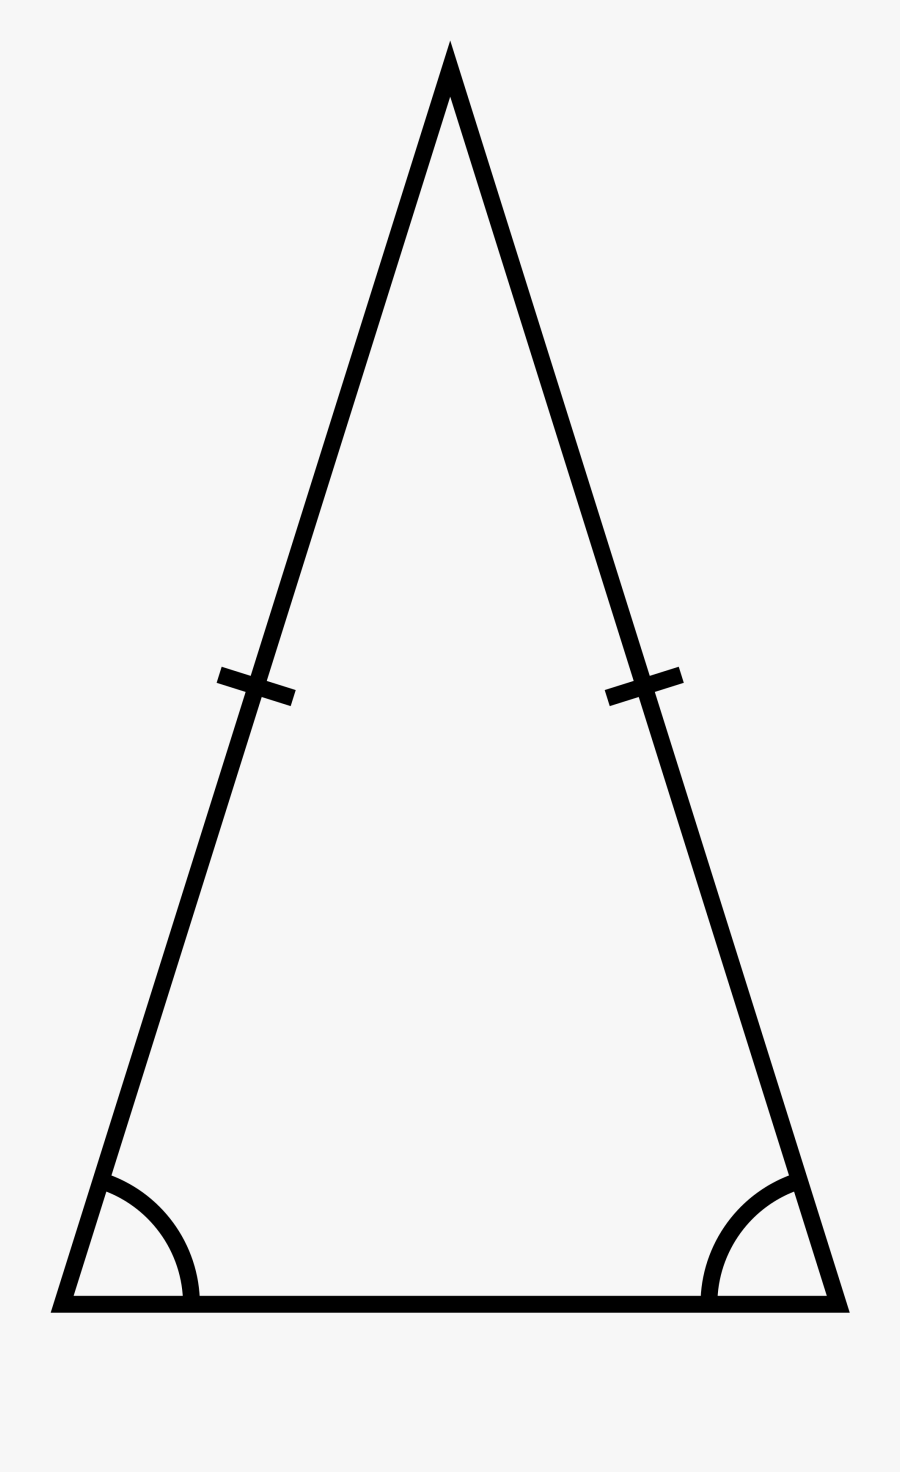 Thumb Image - Acute Isosceles Triangle, Transparent Clipart